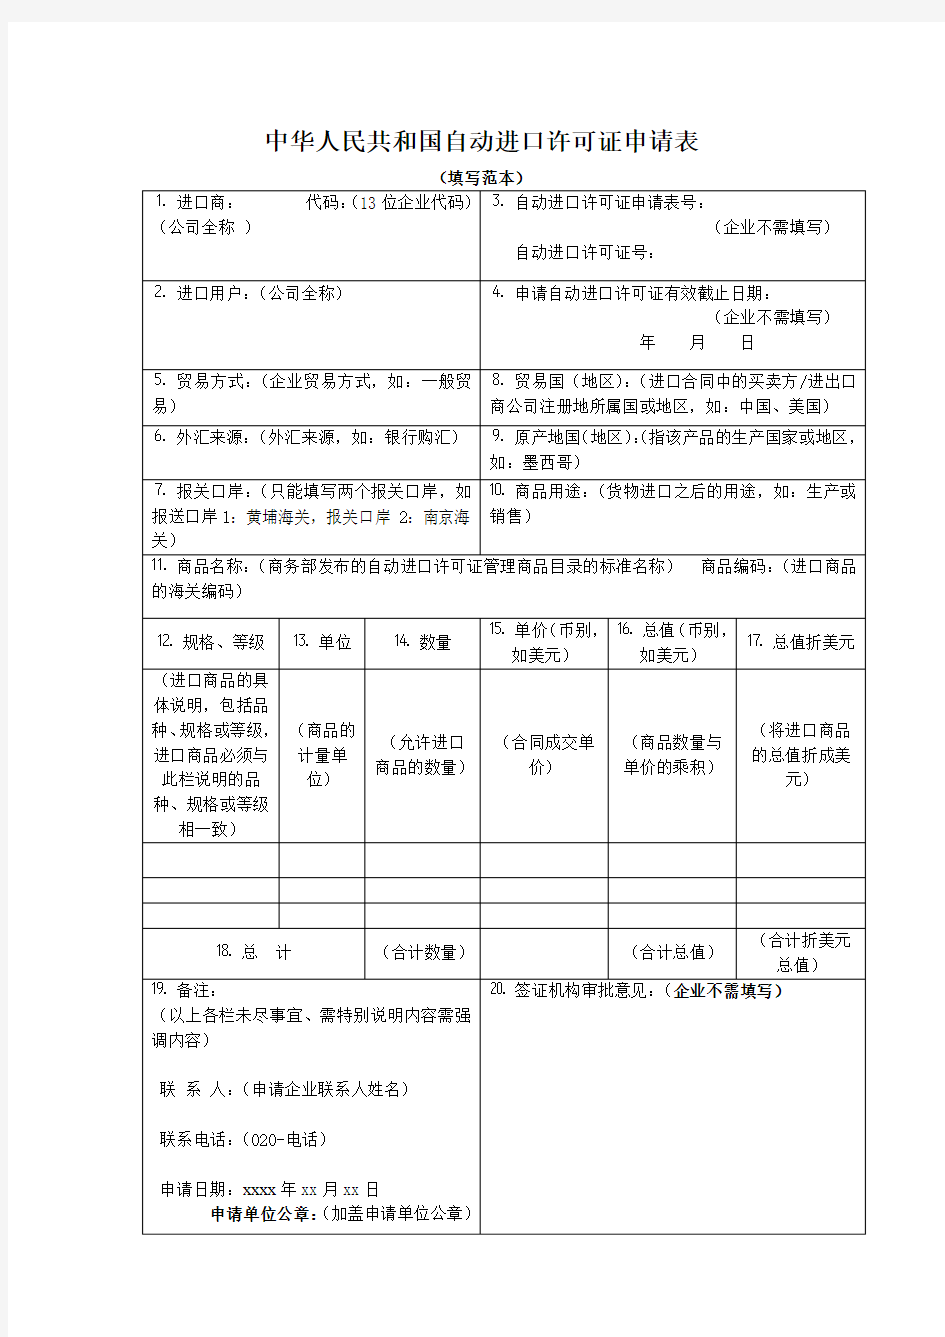 中华人民共和国自动进口许可证申请表(填写范本)